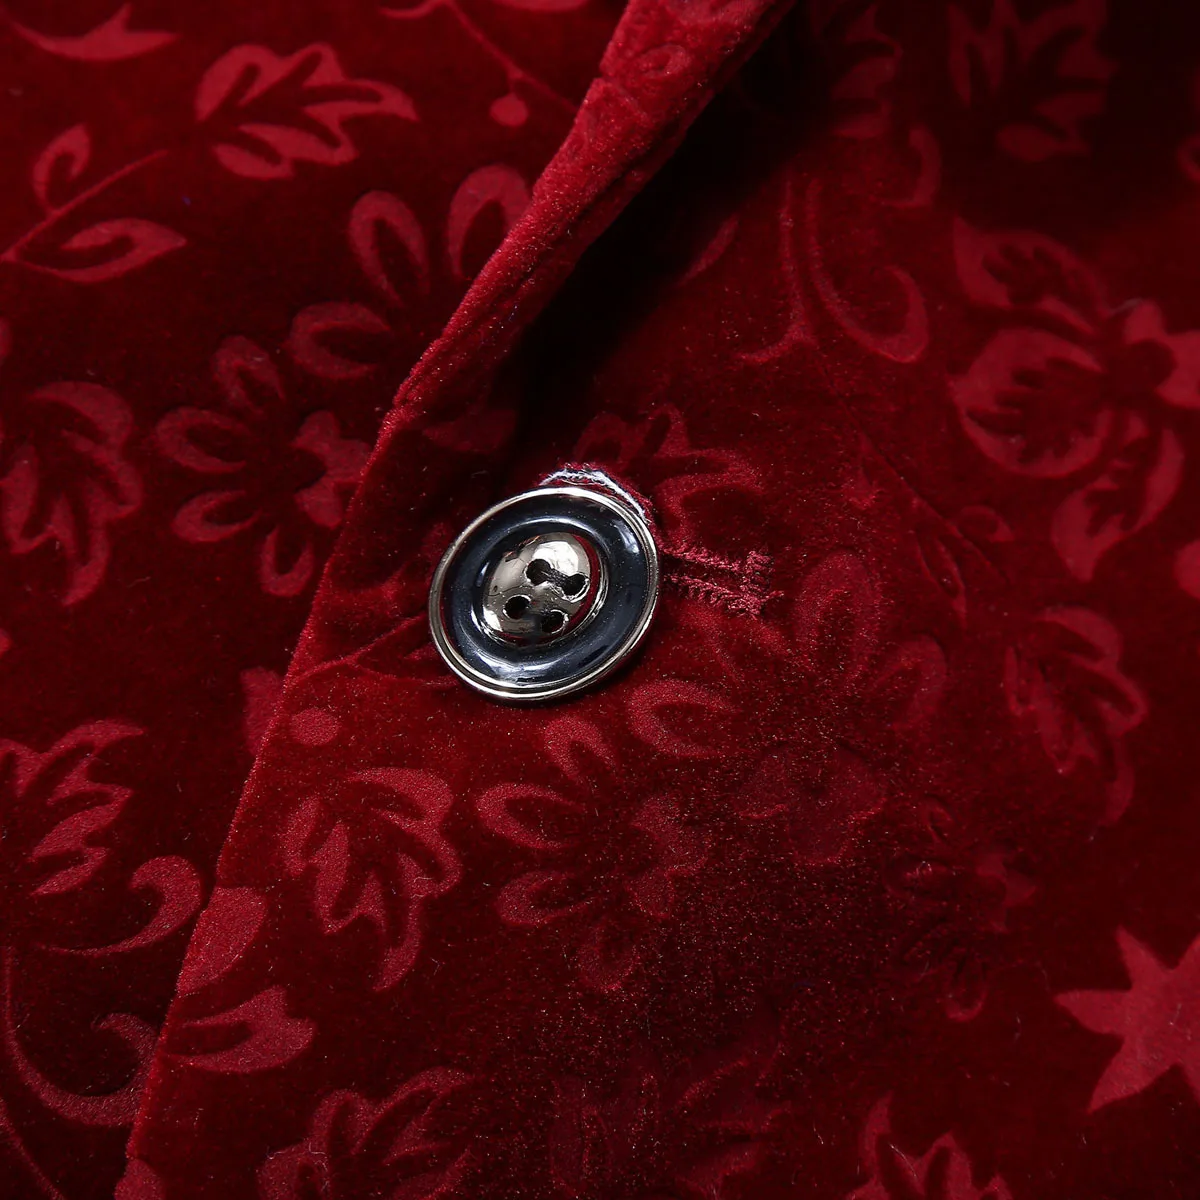 PYJTRL для мужчин осень зима винно-красный, Бургунди бархат цветочный узор костюм куртка Slim Fit Блейзер дизайн Сценические костюмы для певцов